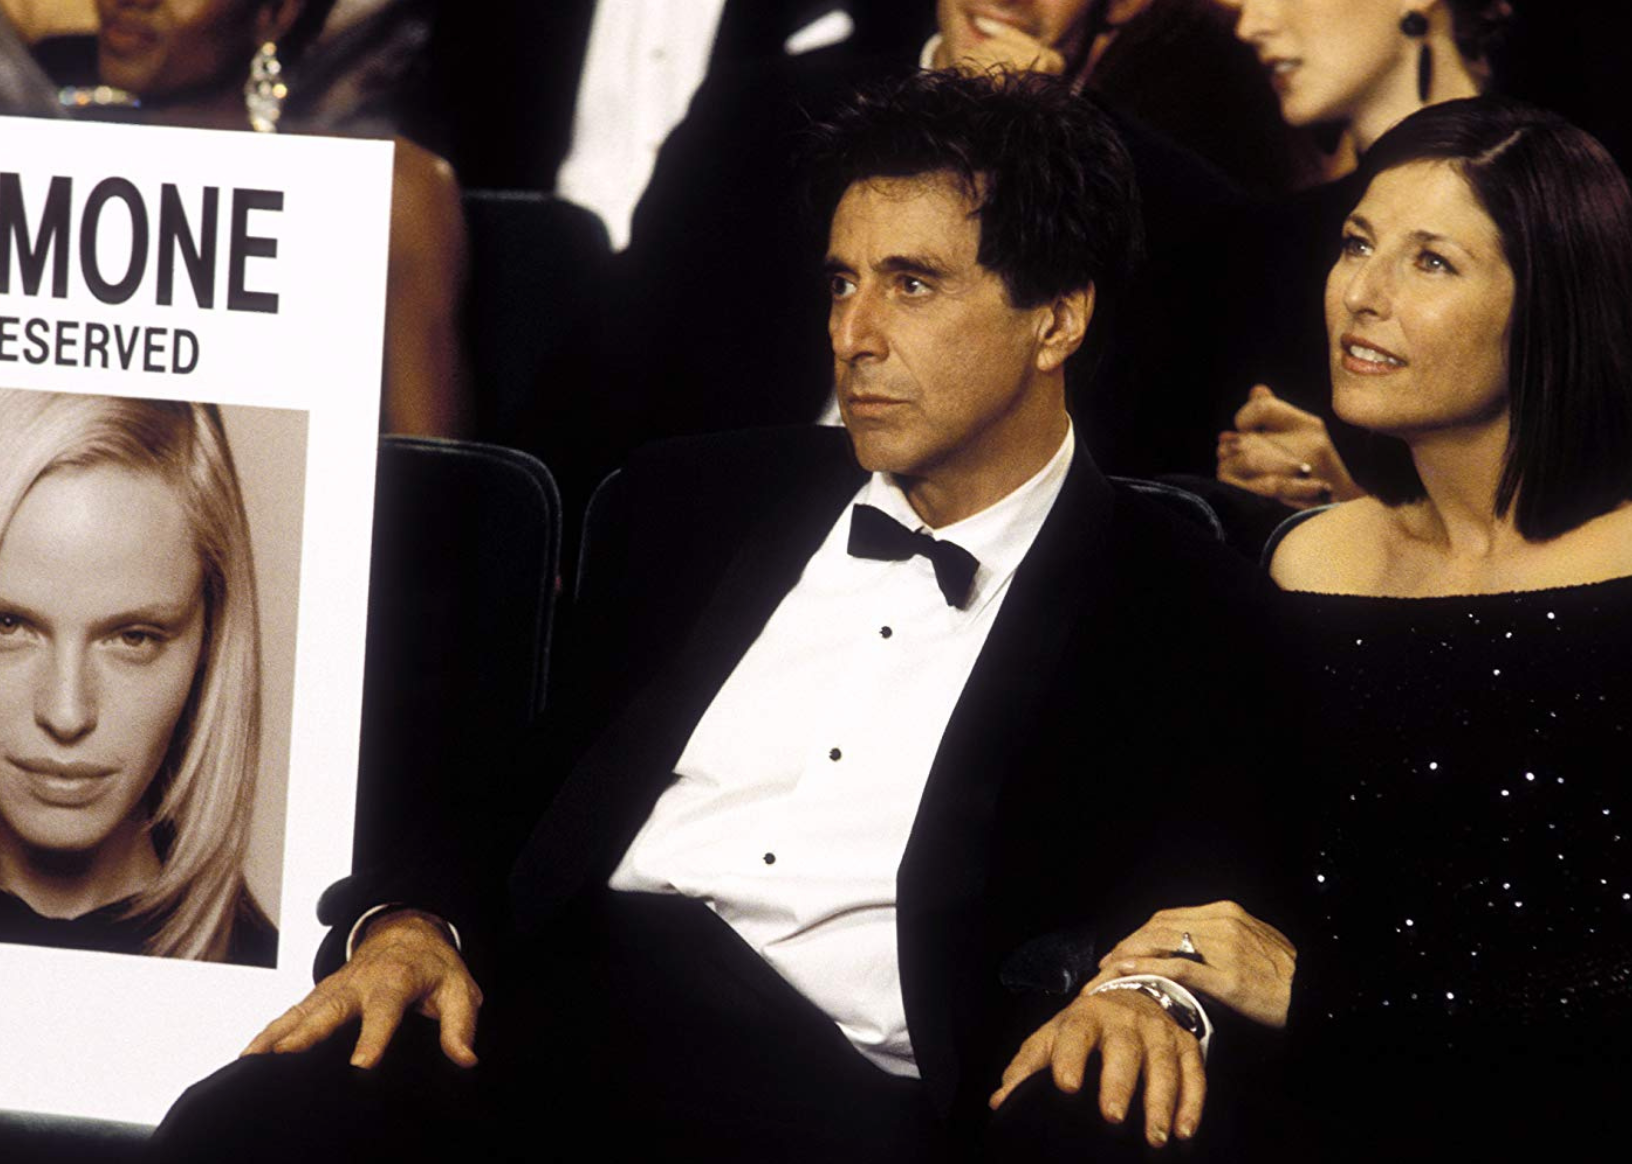 Al Pacino in a scene from ‘Simone’.